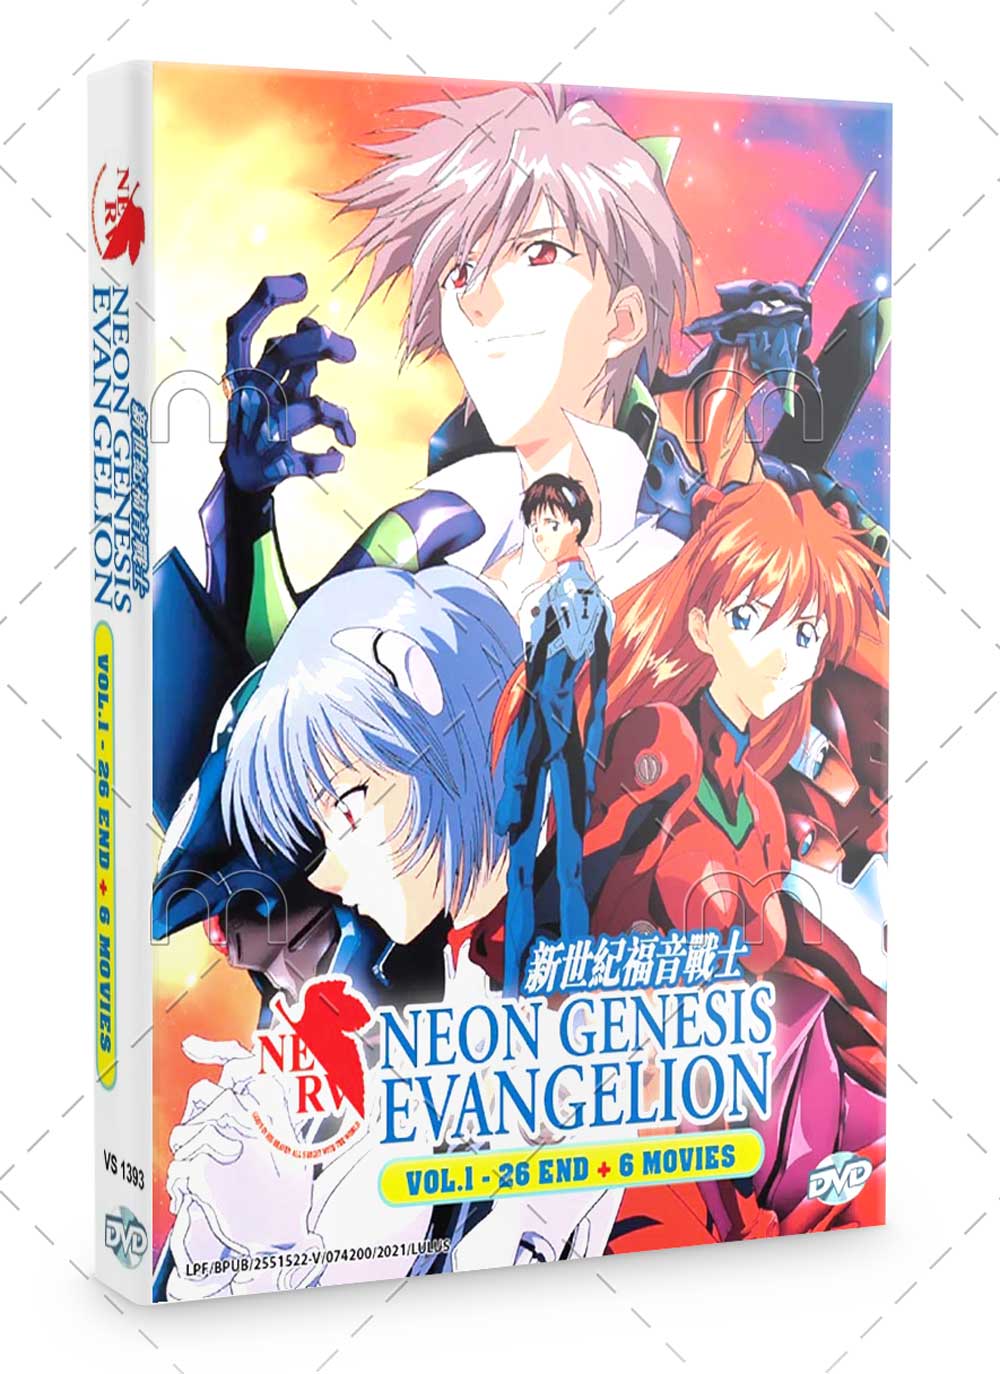 Neon Genesis Evangelion TV 1-26 + 6 Movies (DVD) (1995-2021) Anime